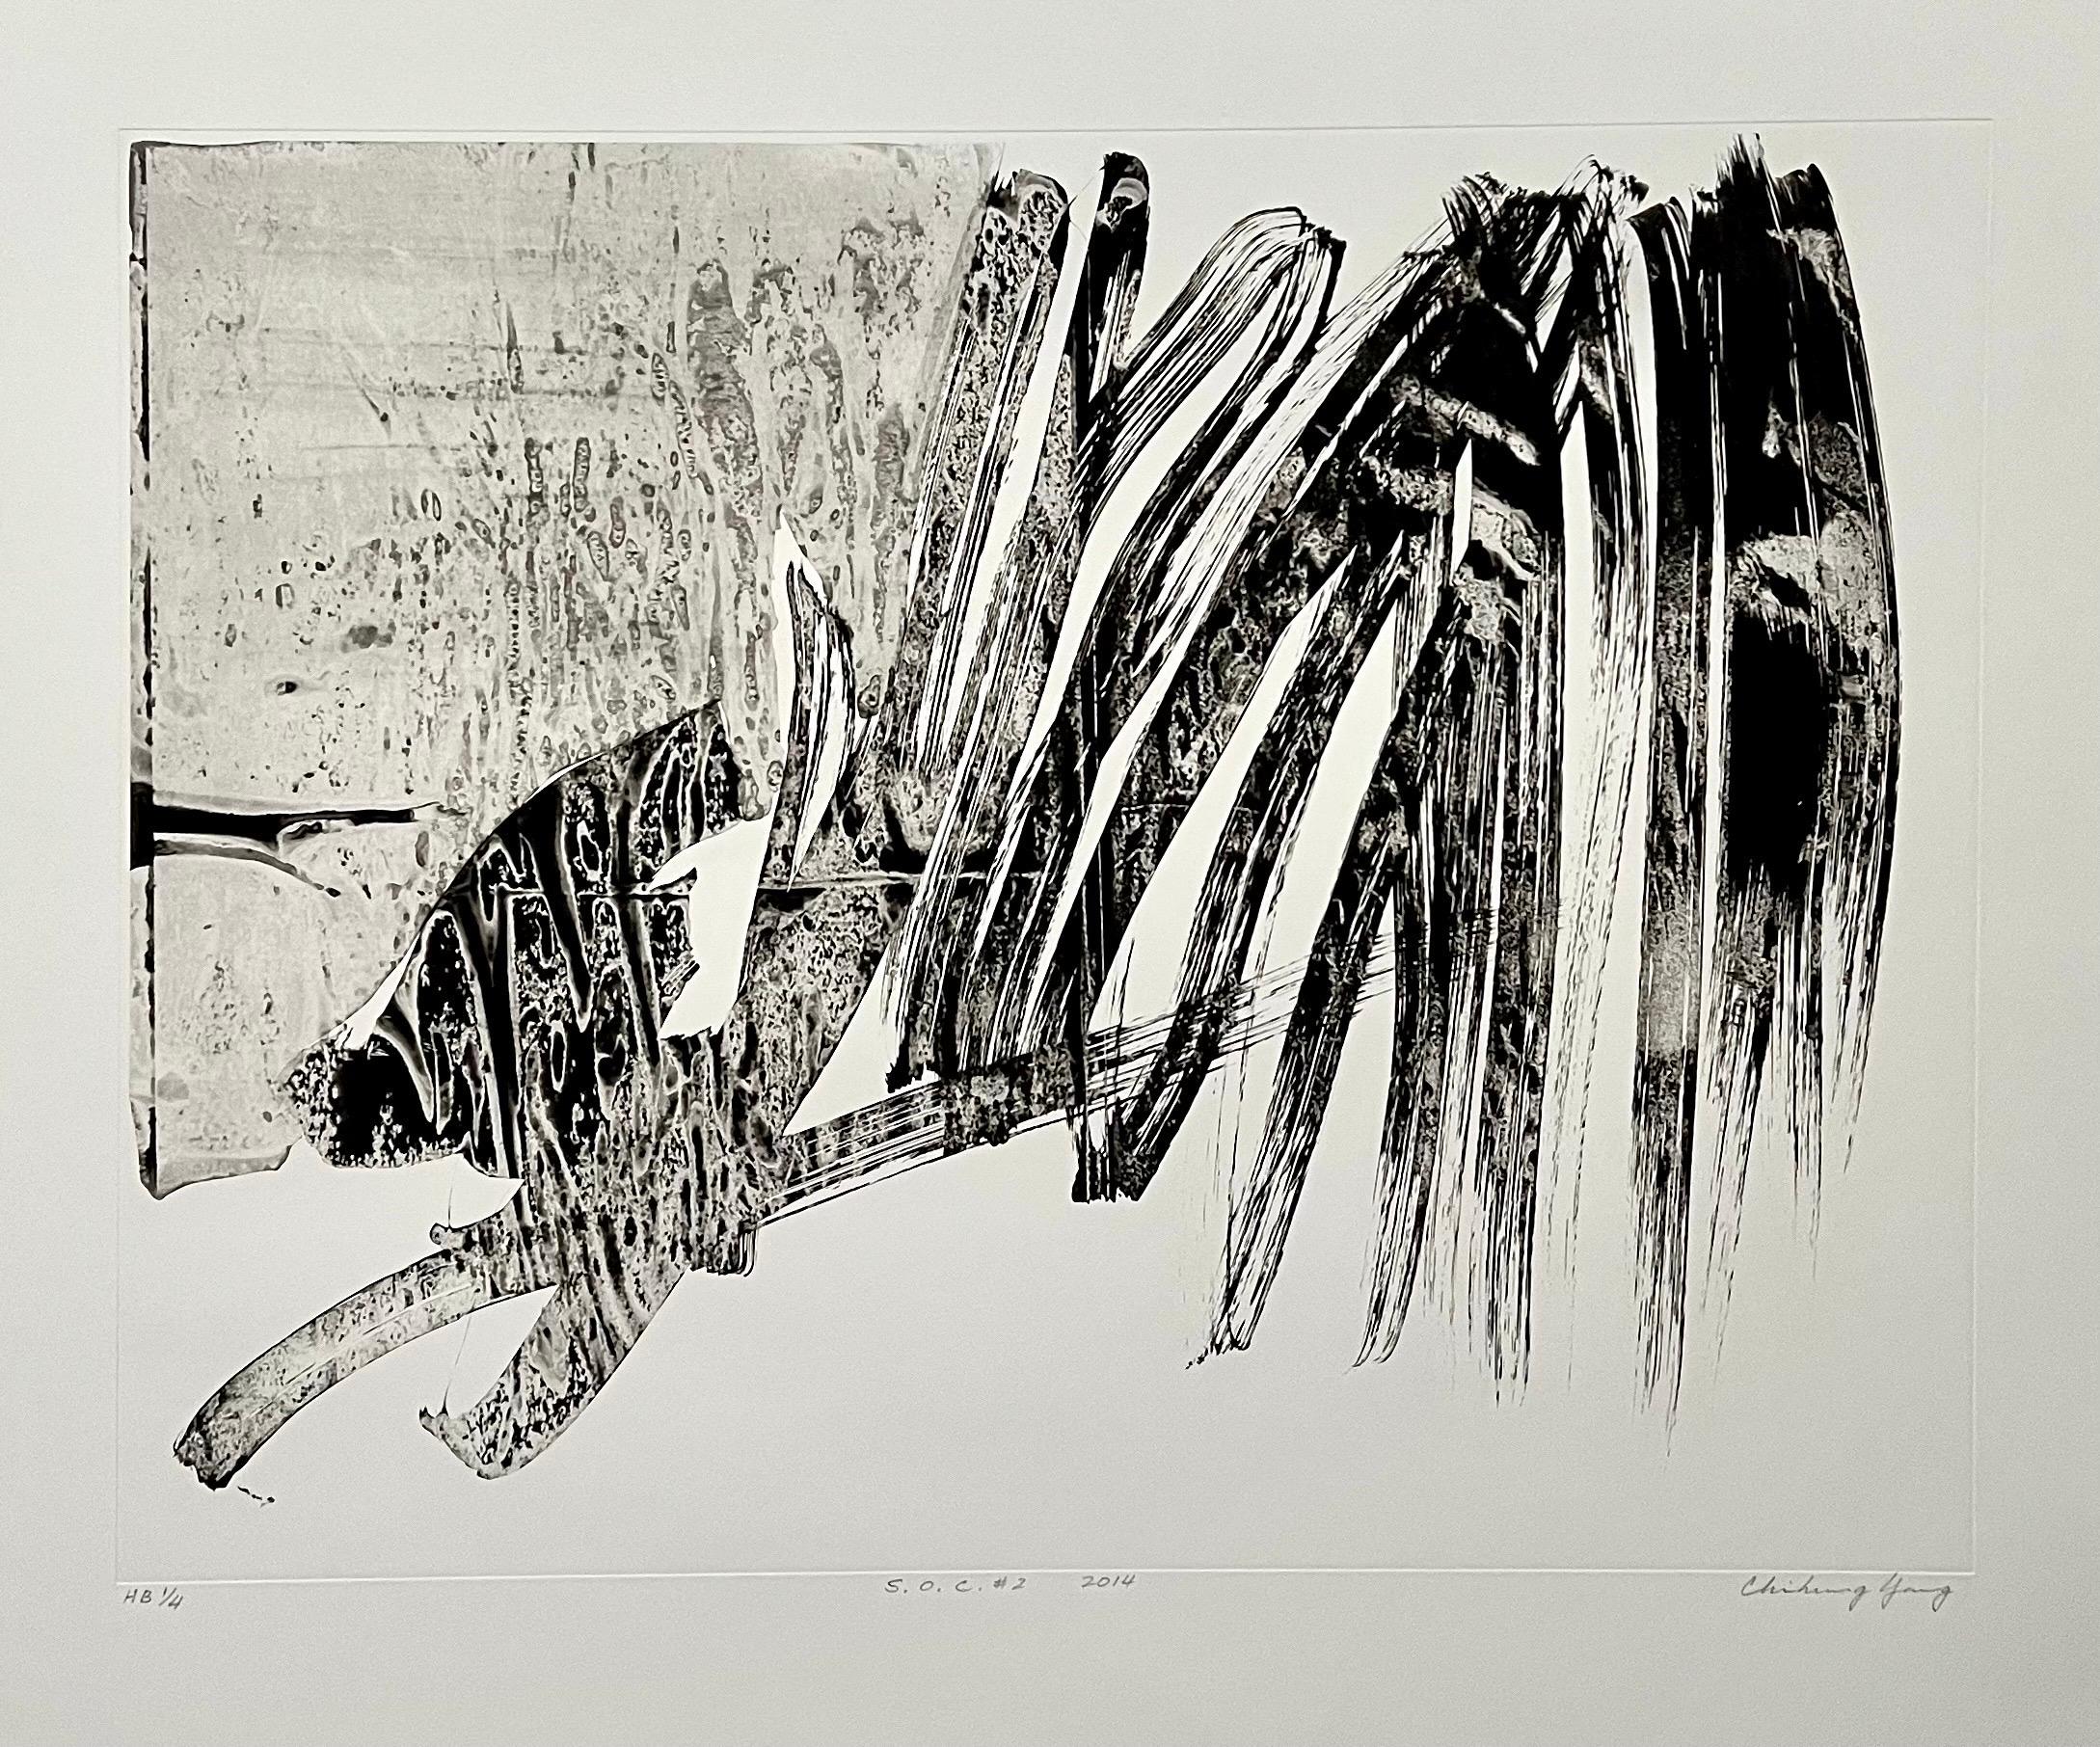 S.O.C. #2
2014
Gravure à l'eau-forte
76.5 x 91cm

Yang Chihung (chinois : 楊識宏 ; pinyin : Yang Chihung ; né en 1947) artiste taïwanais-américain.
Yang Chi-hung est né le 25 octobre 1947, à Chungli, à Taiwan. Il s'est intéressé à l'art dès son enfance